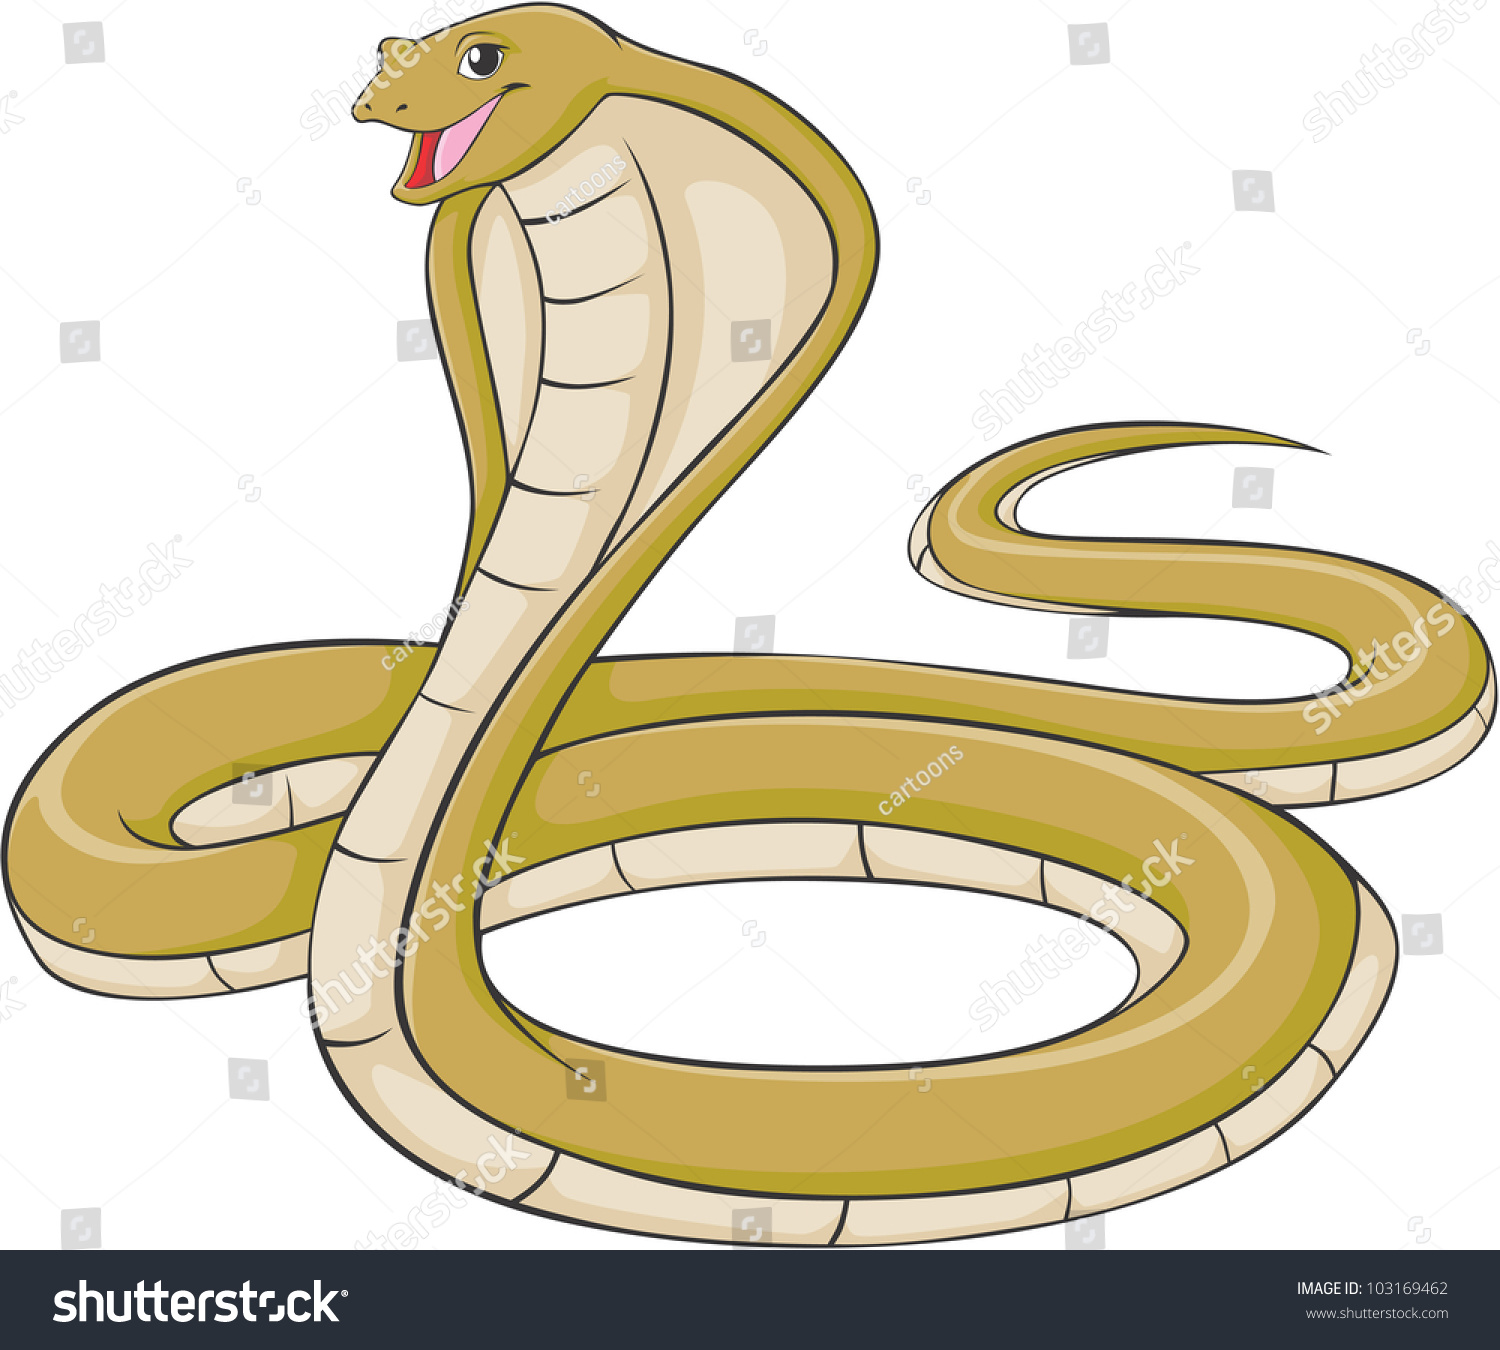 Happy King Cobra Cartoon Stock Vector 103169462 : Shutterstock